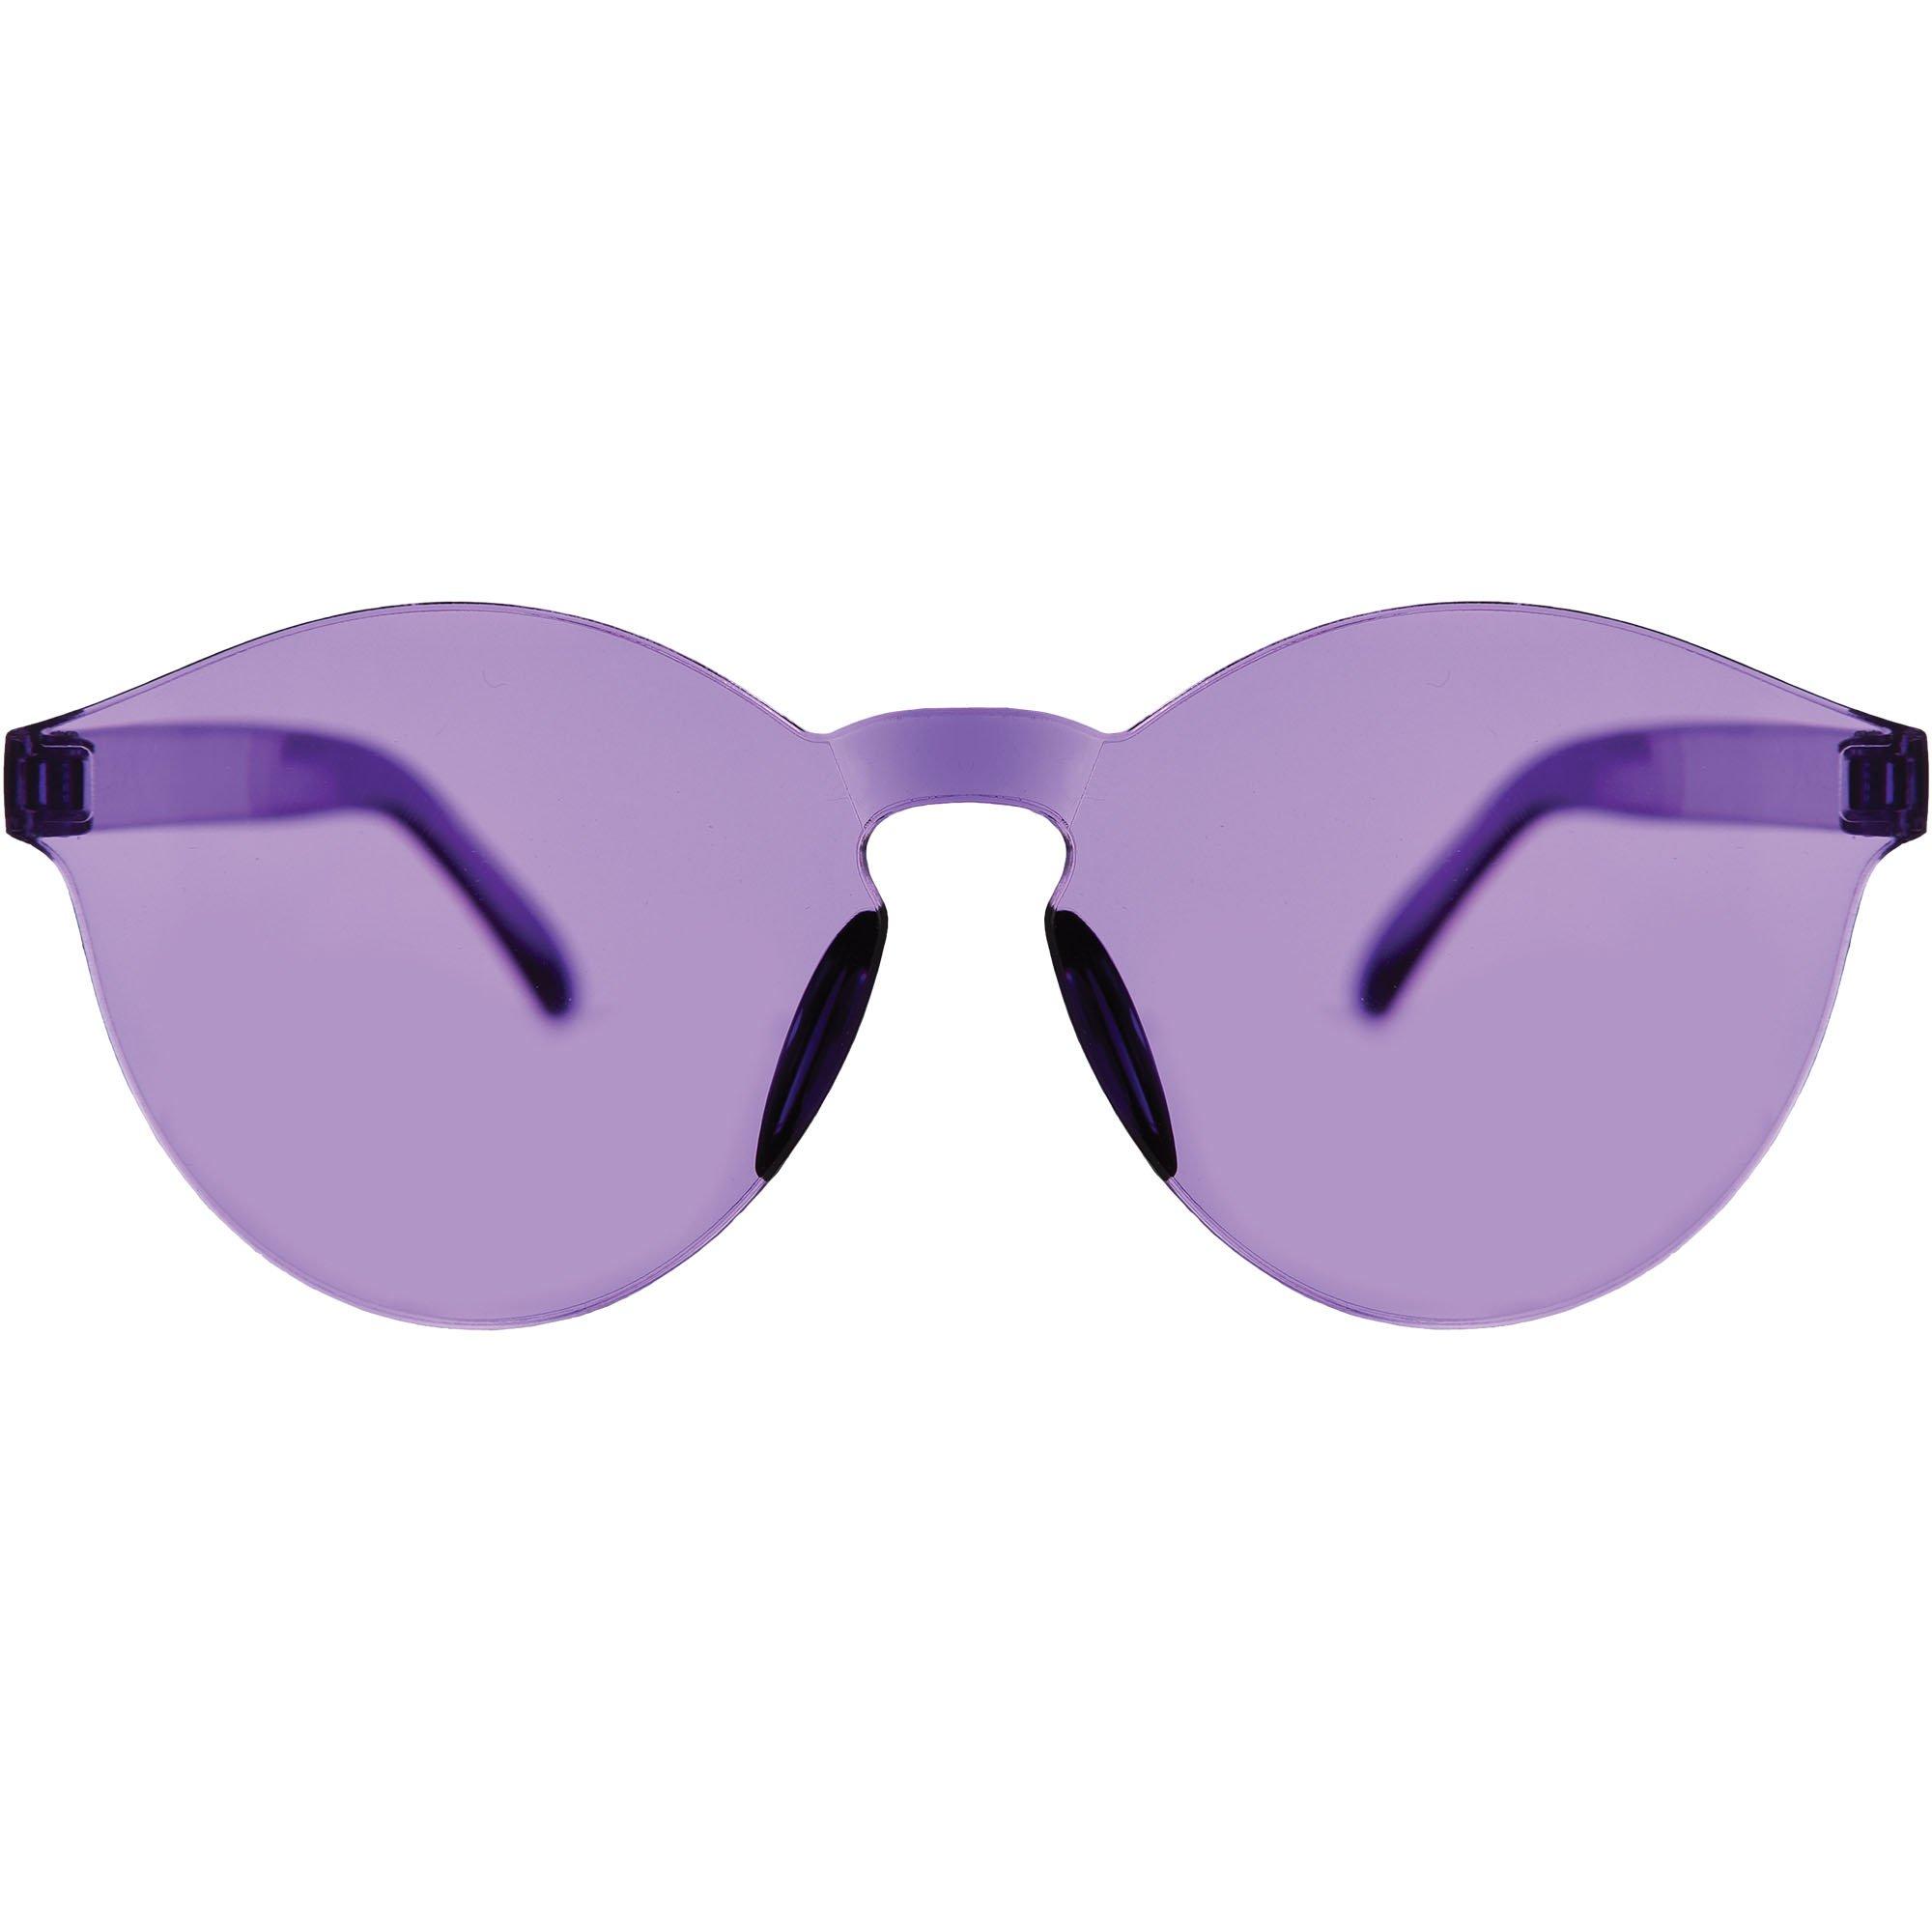 Frameless Purple Glasses